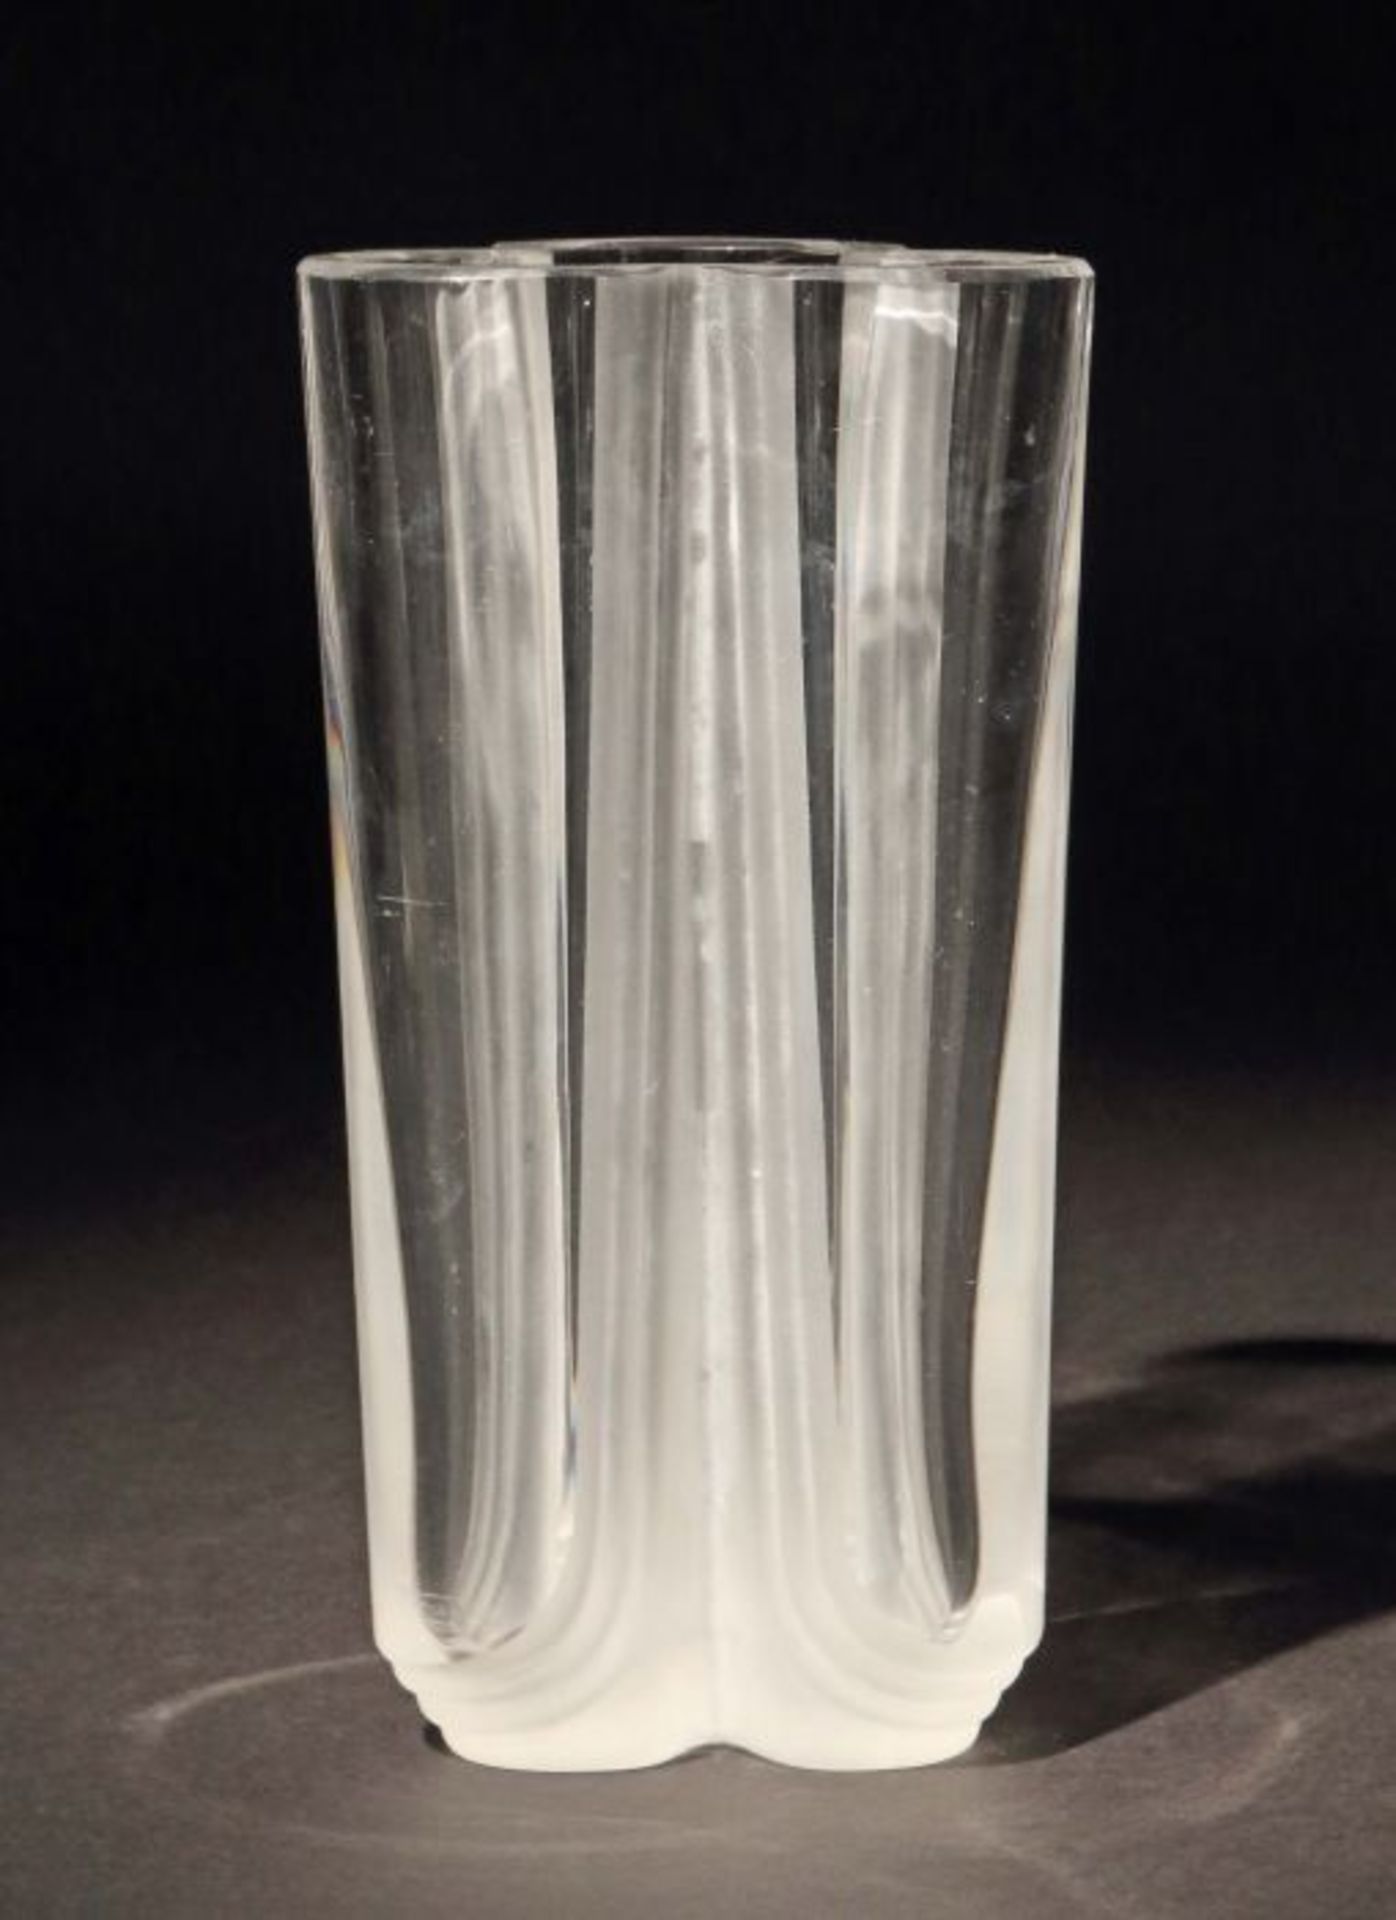 Vase Daum Nancy, Frankreich, 1960/70er Jahre, farbloses Kristallglas, modelgeblasen, dreipassige